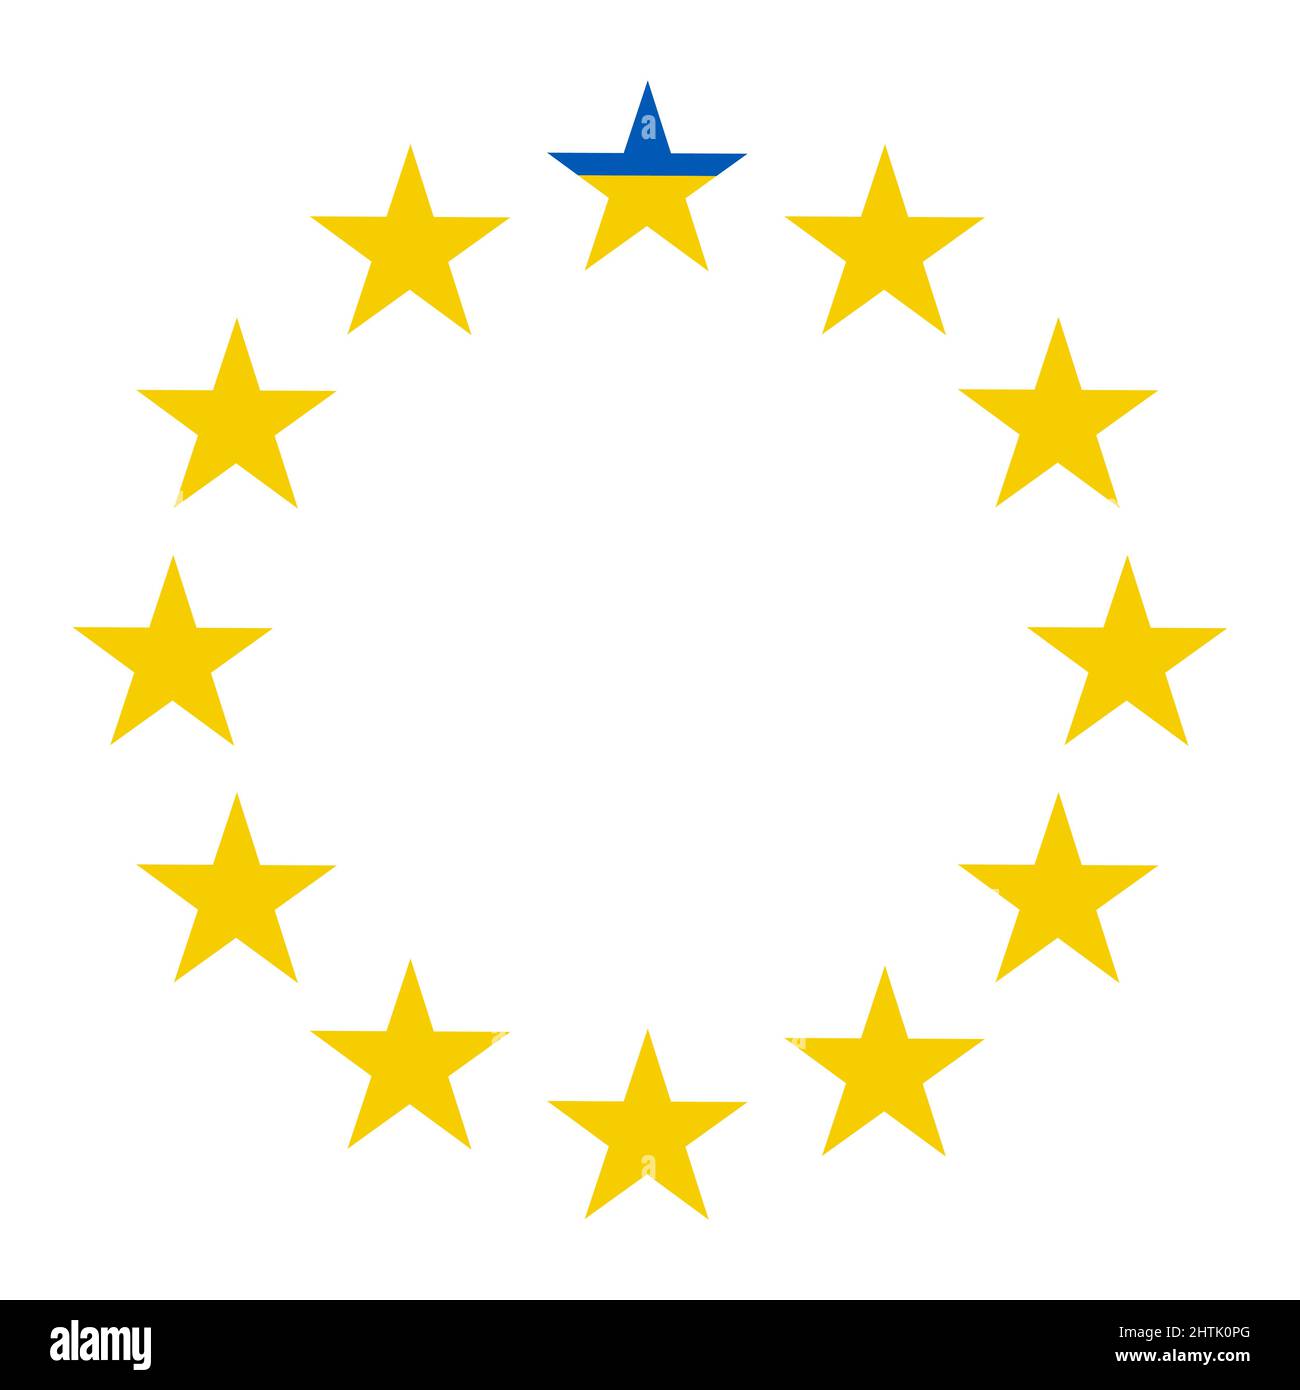 Simbolo Ucraina adesione all'Unione europea, stella blu gialla, UE più UA Illustrazione Vettoriale